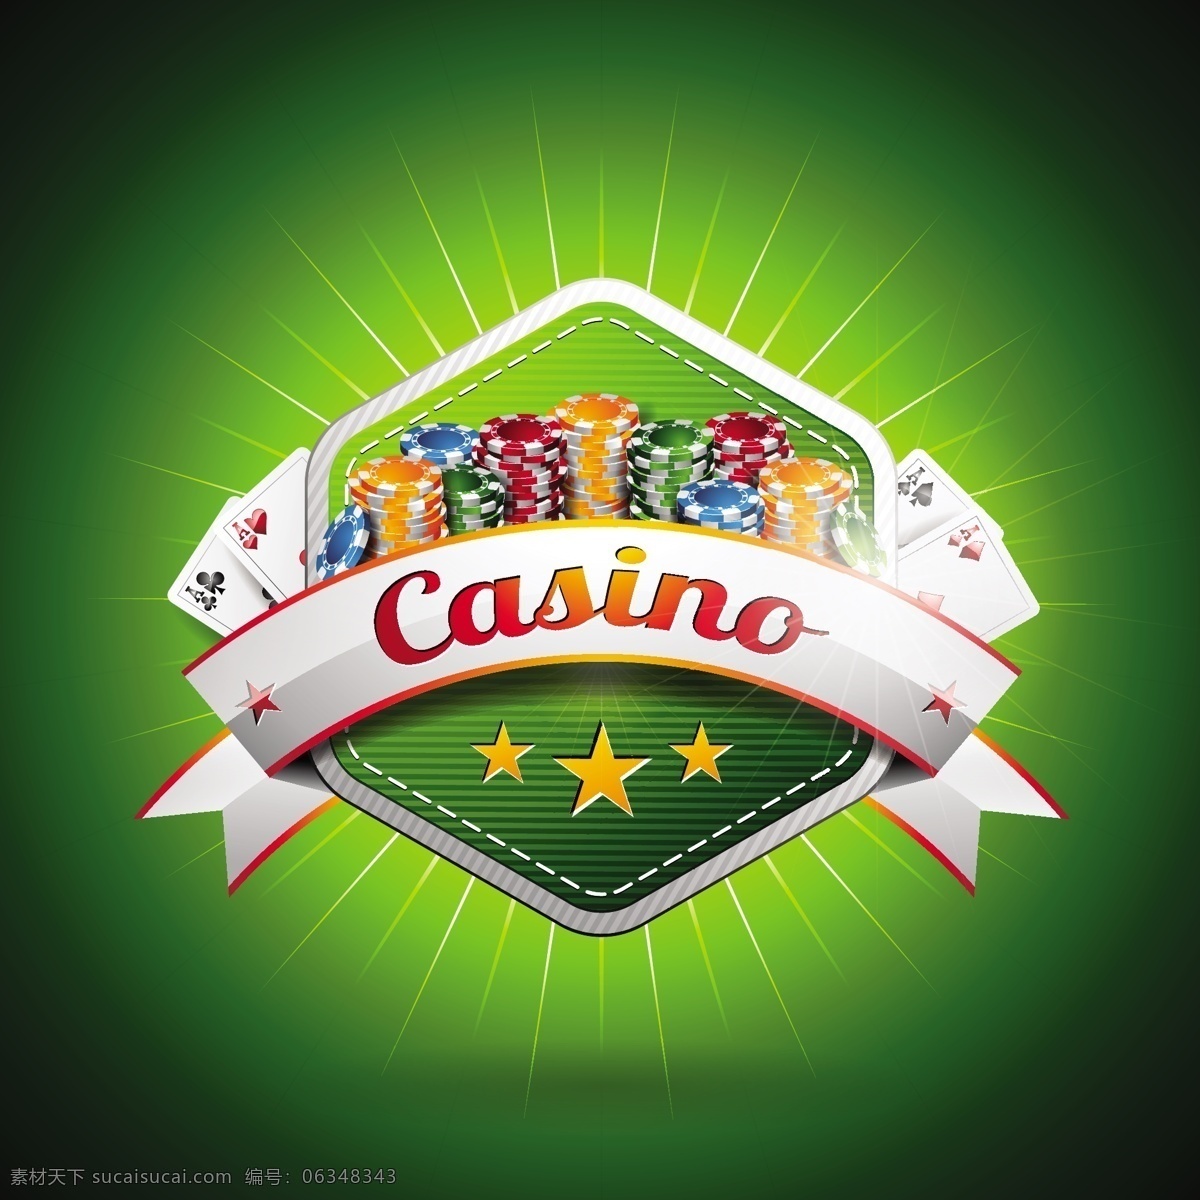 赌场背景设计 背景 卡片 墙纸 颜色 游戏 五颜六色 赌场 扑克 背景色 彩色